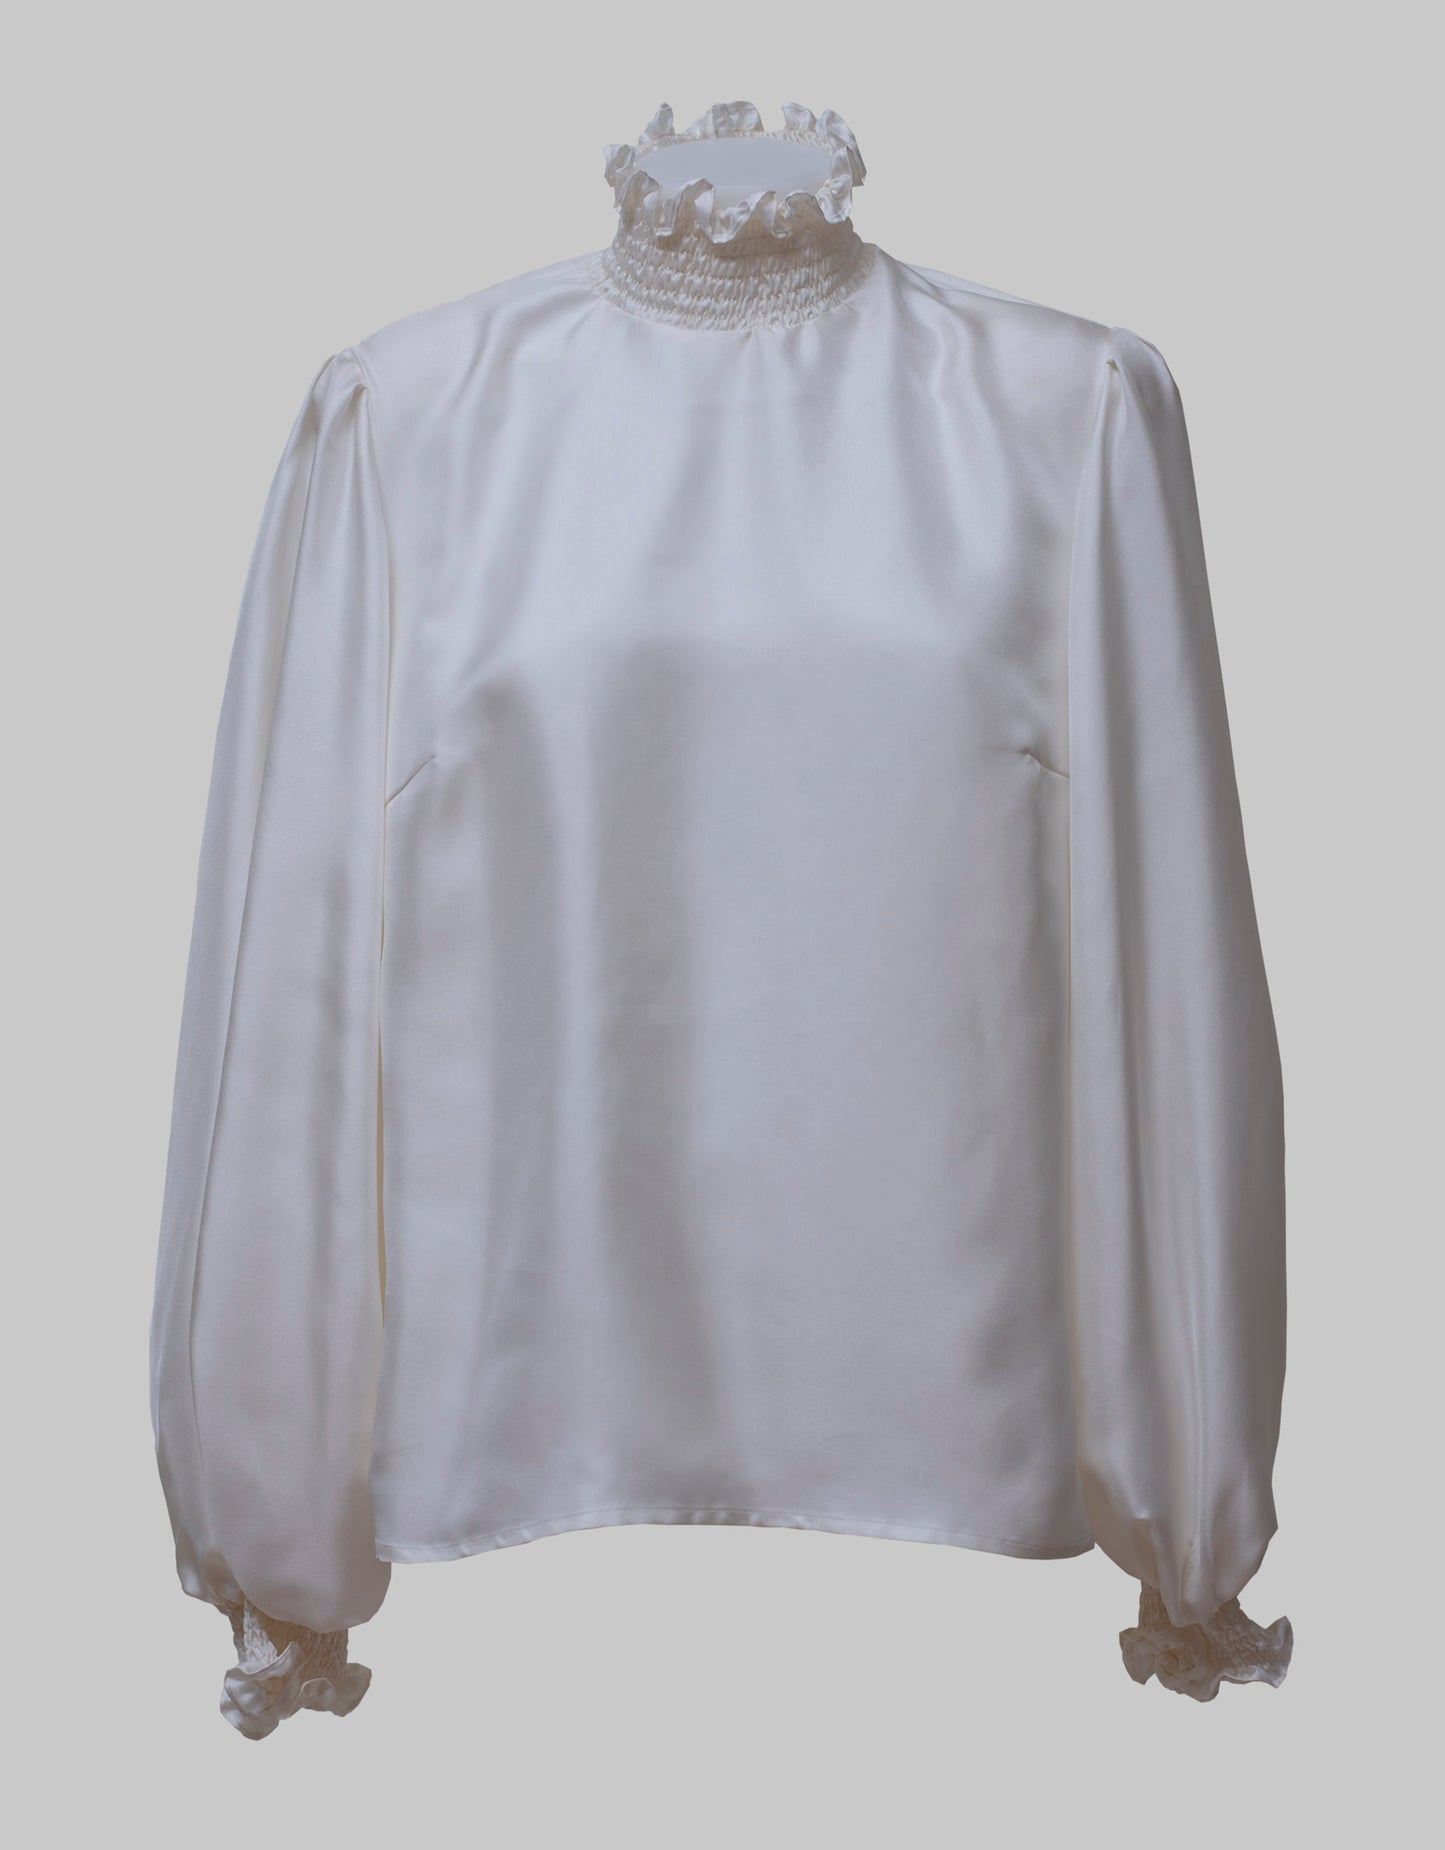 Catherine white shirt